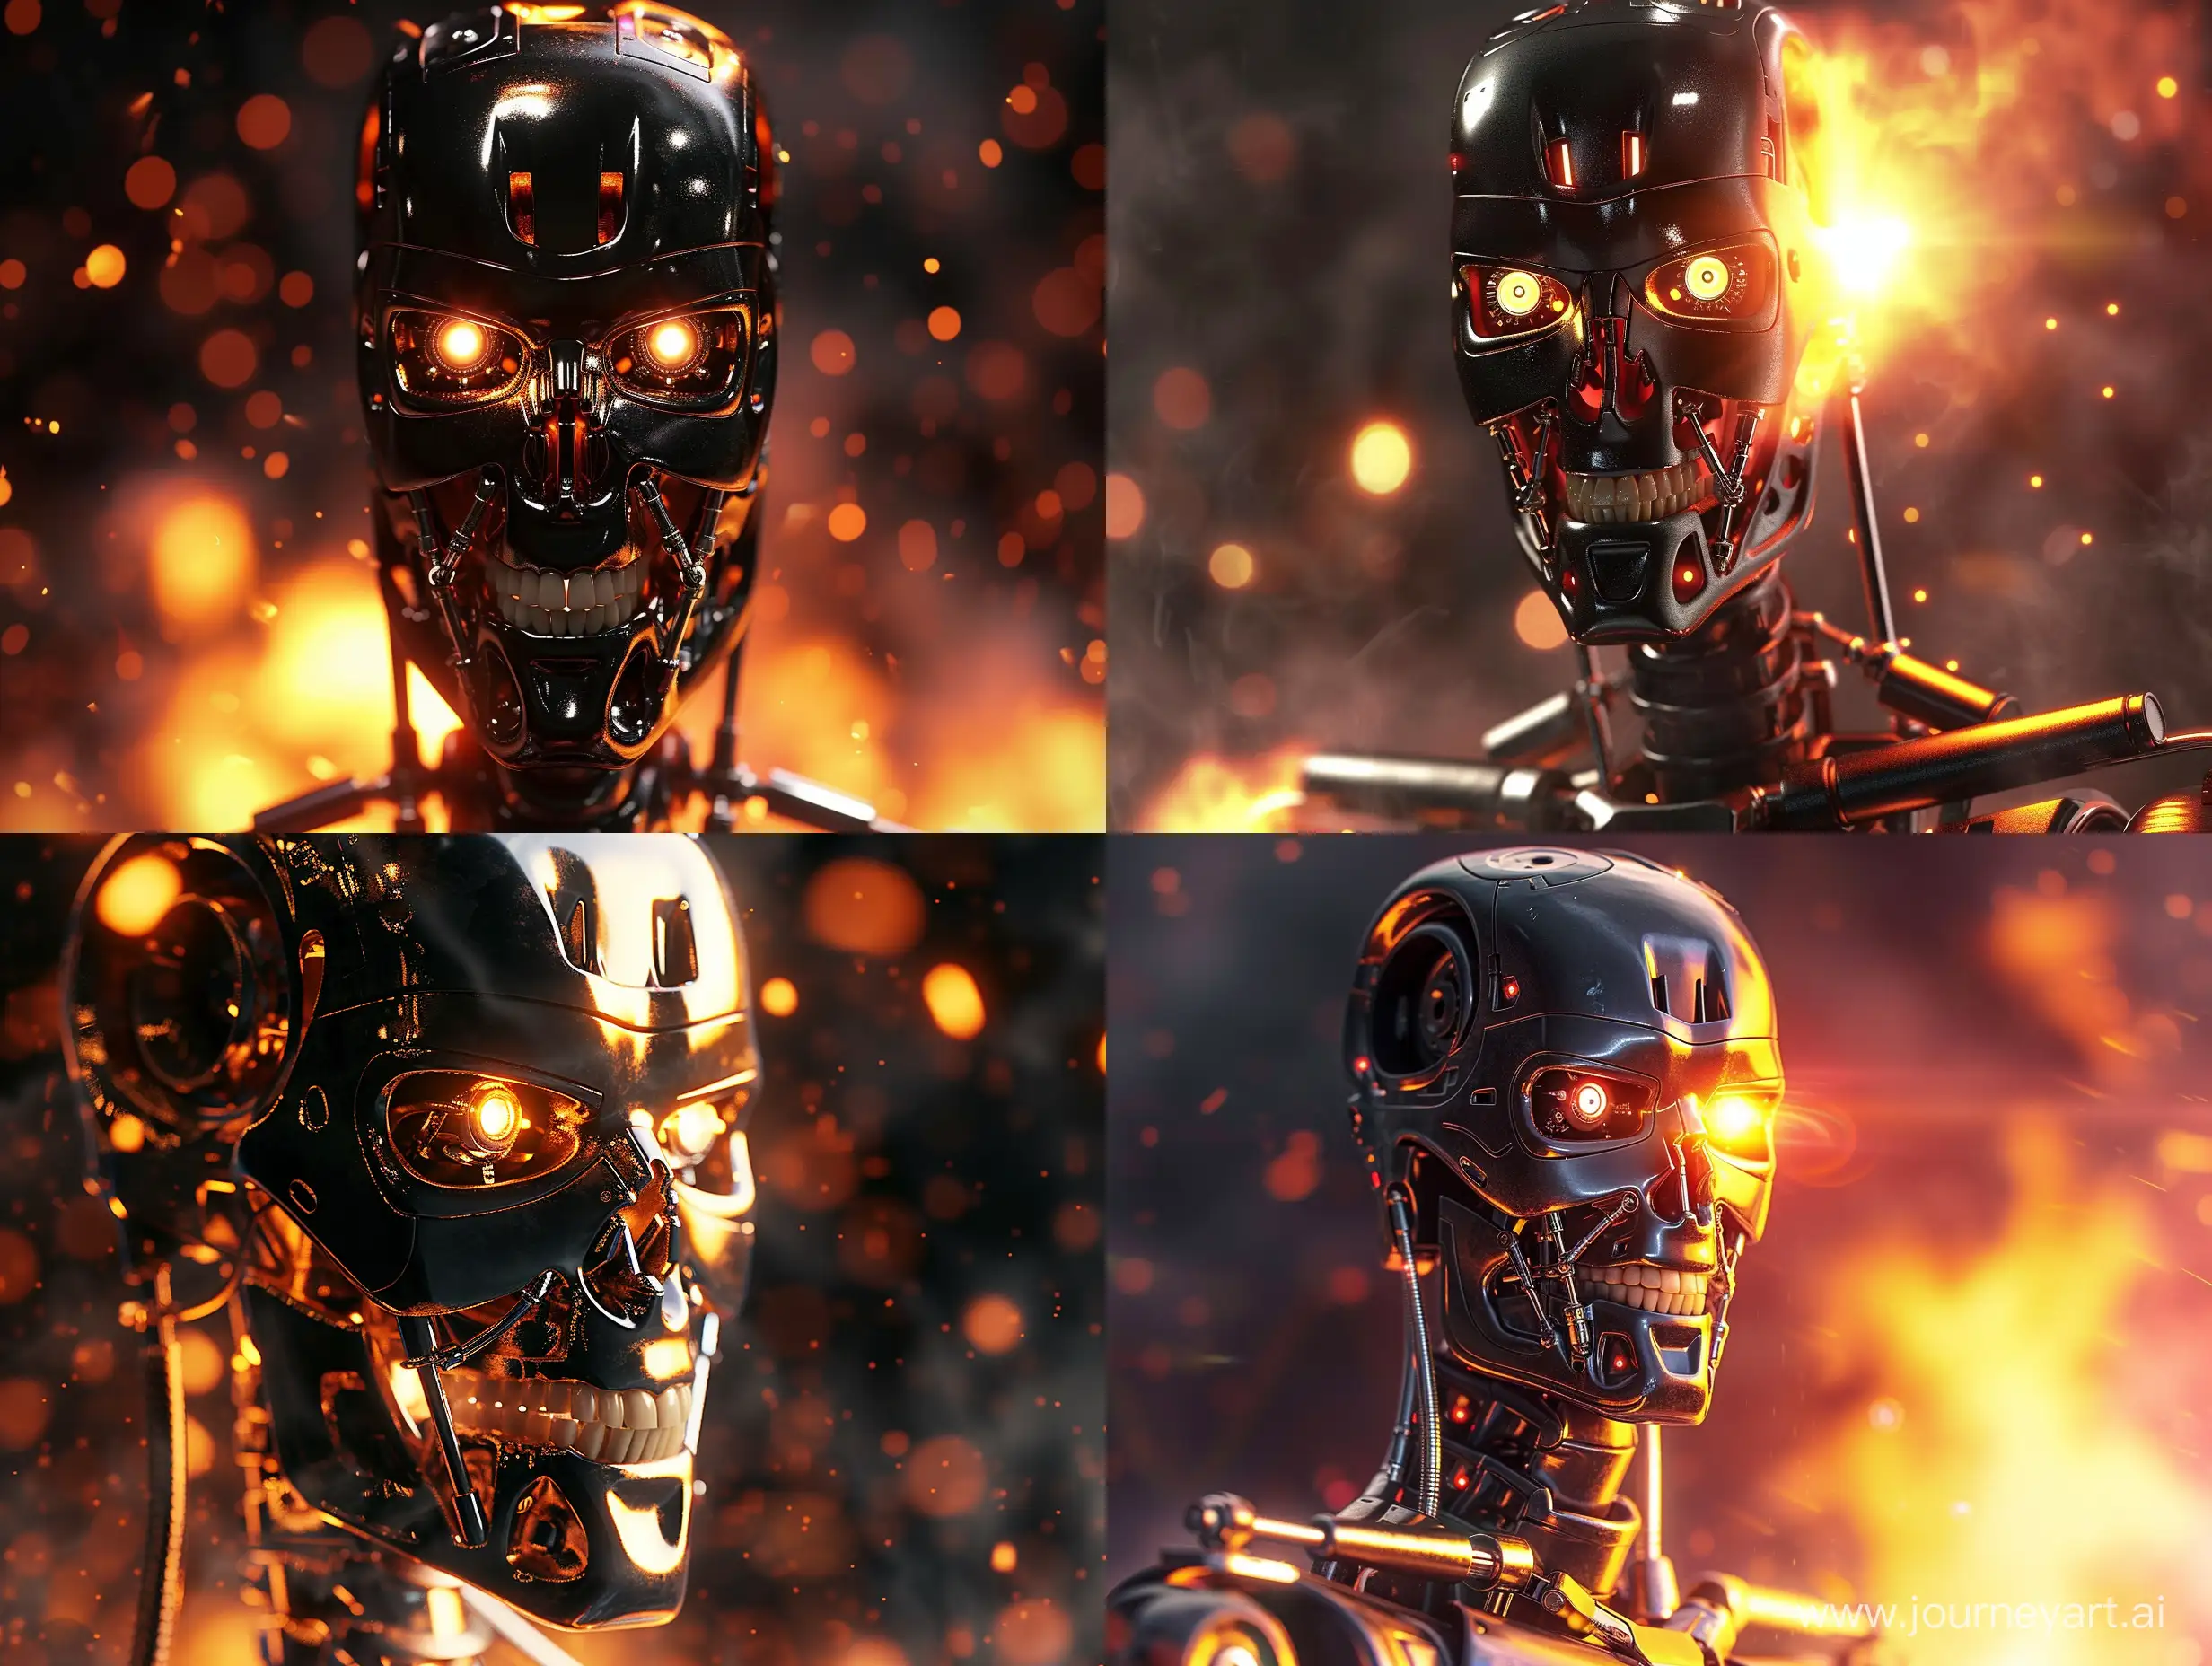 Робот терминатор из одноименного фильма , огонь, фотореализм, крупный план, блеск, отражения, дым, свет, темная тема